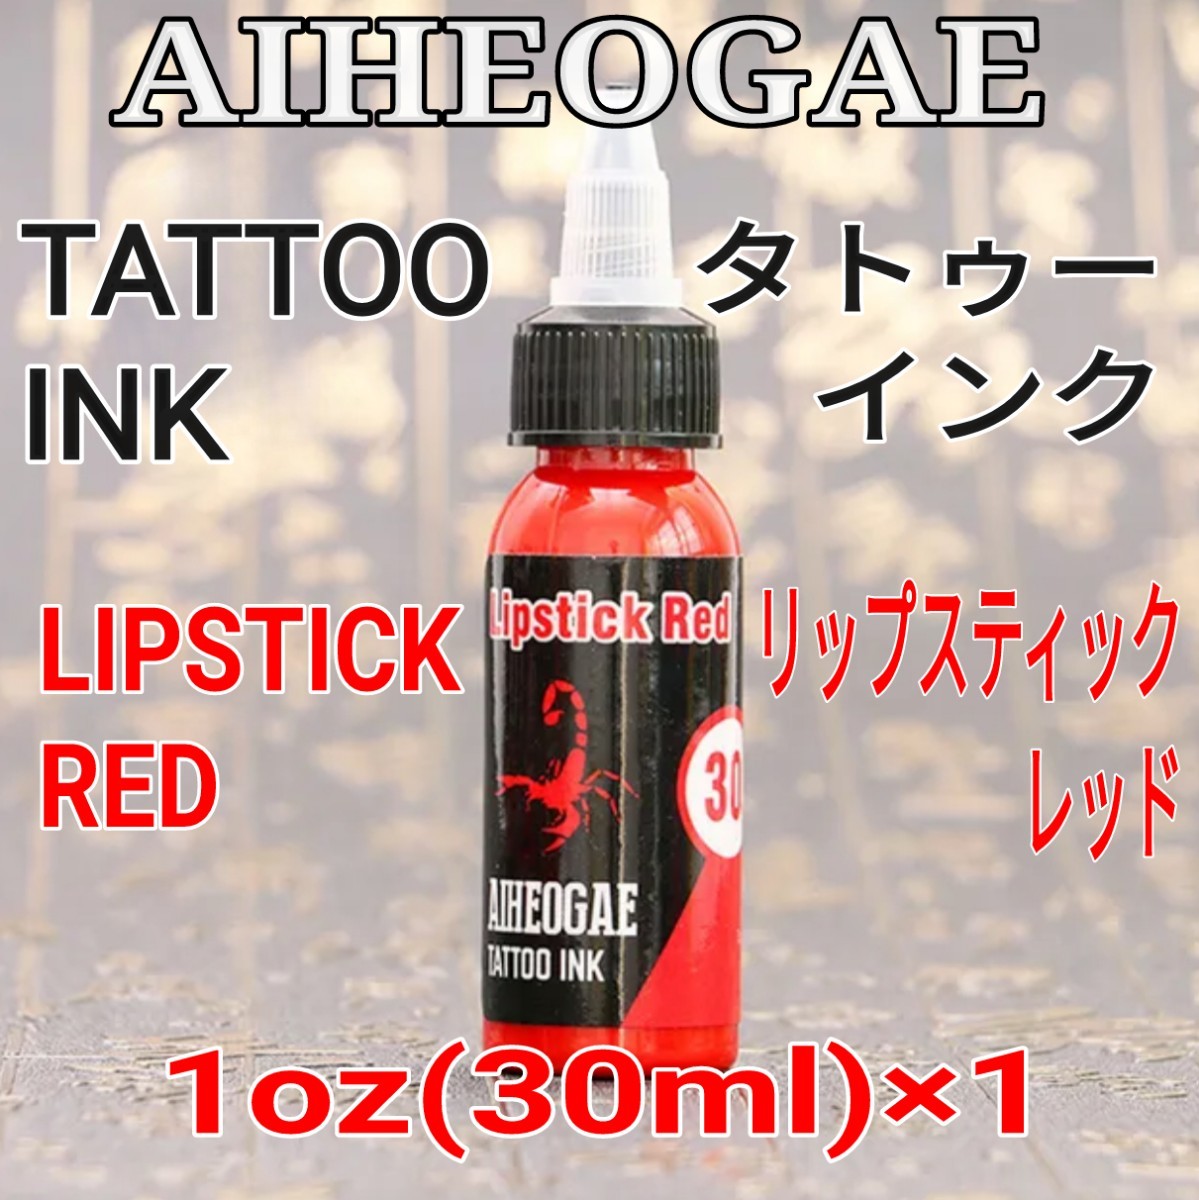 AIHEOGAE タトゥーインク LIPSTICK RED(リップスティックレッド) 1oz(30ml)×1 ☆ 刺青 タトゥー マシン tattoo machine ☆の画像1